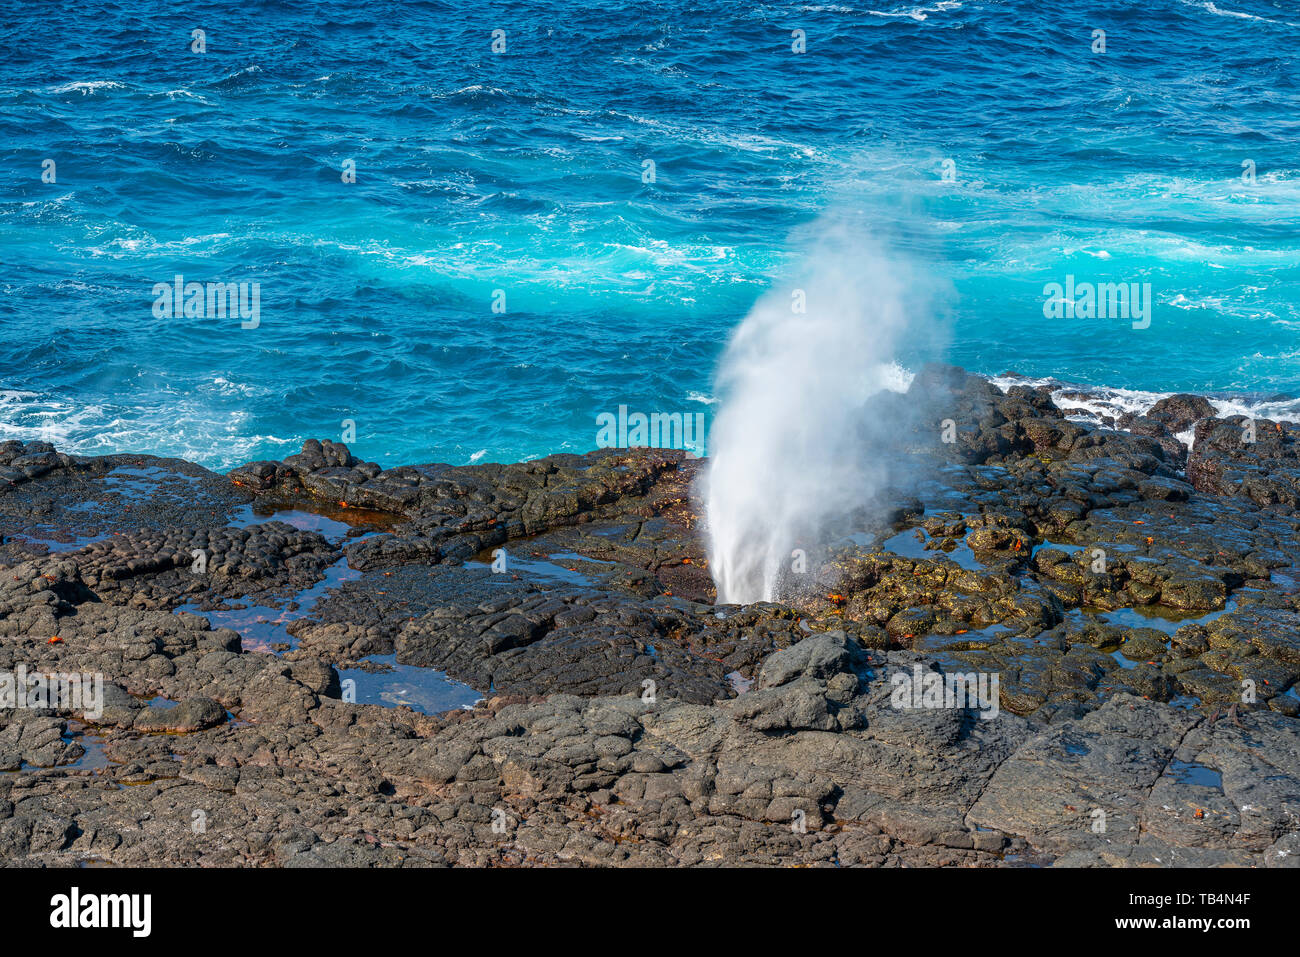 Paesaggio con la punta Pitt con un blowhole eruzione sulla Espanola isola e le acque blu dell'Oceano Pacifico, isole Galapagos, Ecuador. Foto Stock